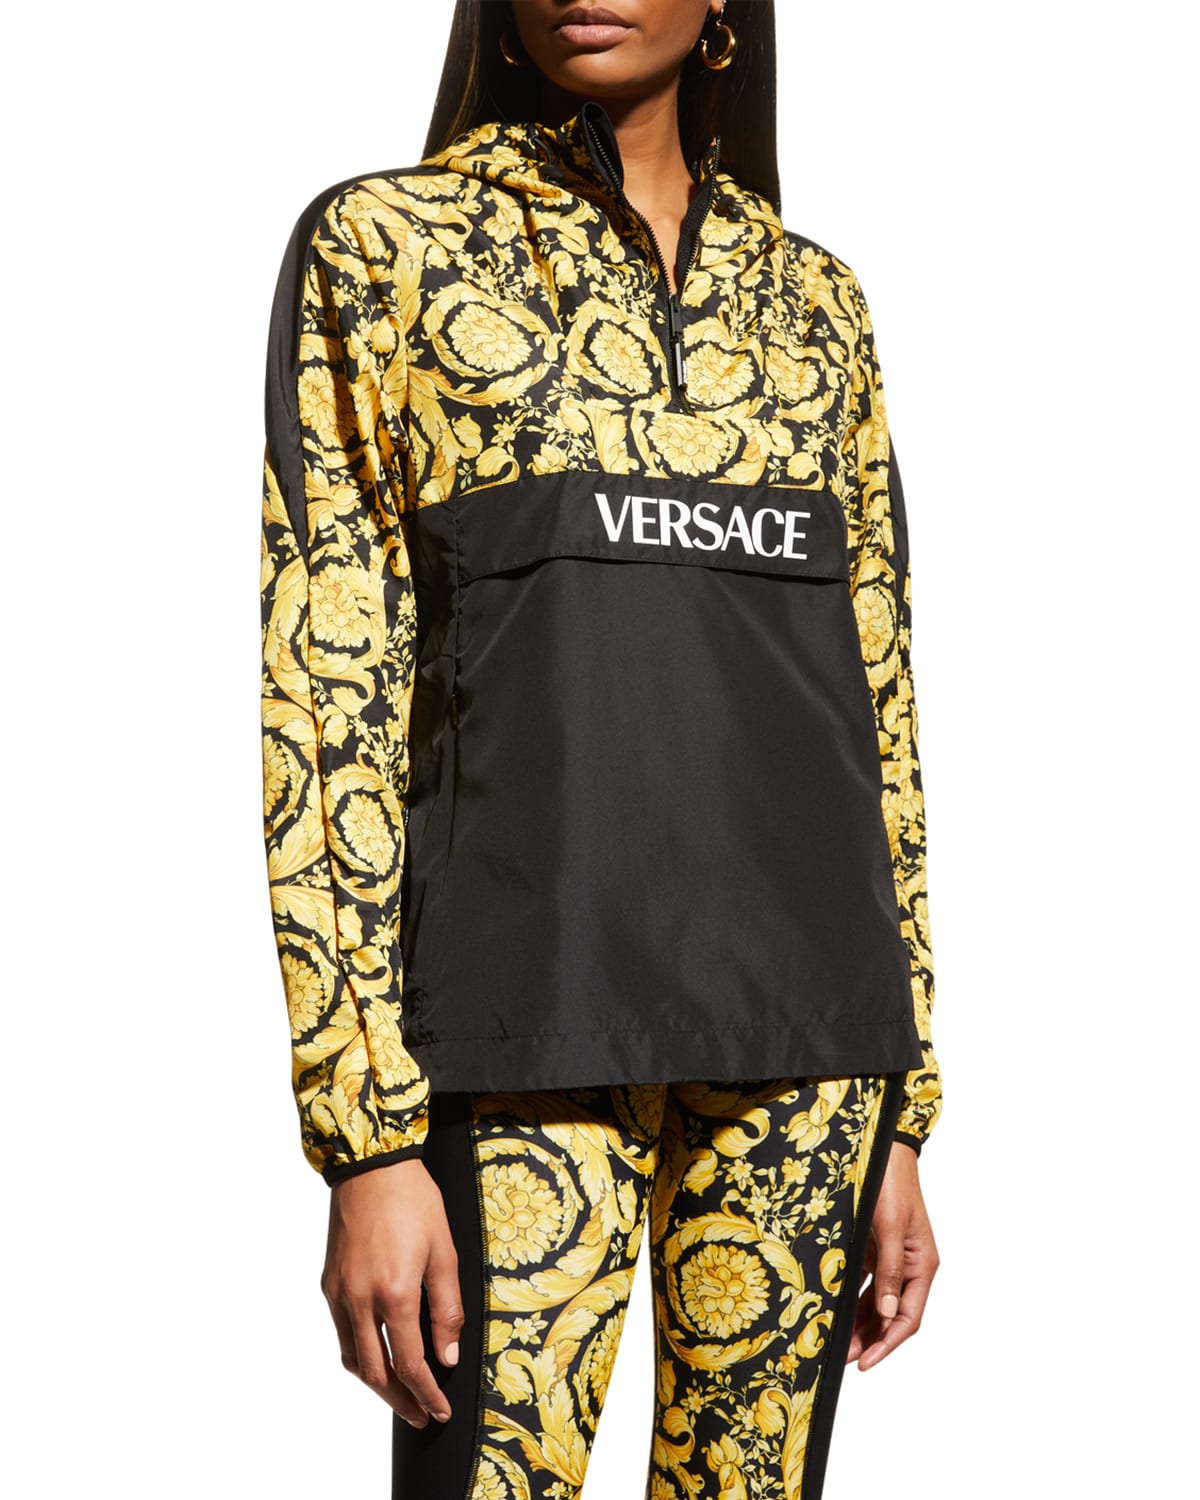 Versace Barocco Hooded Sweatshirt